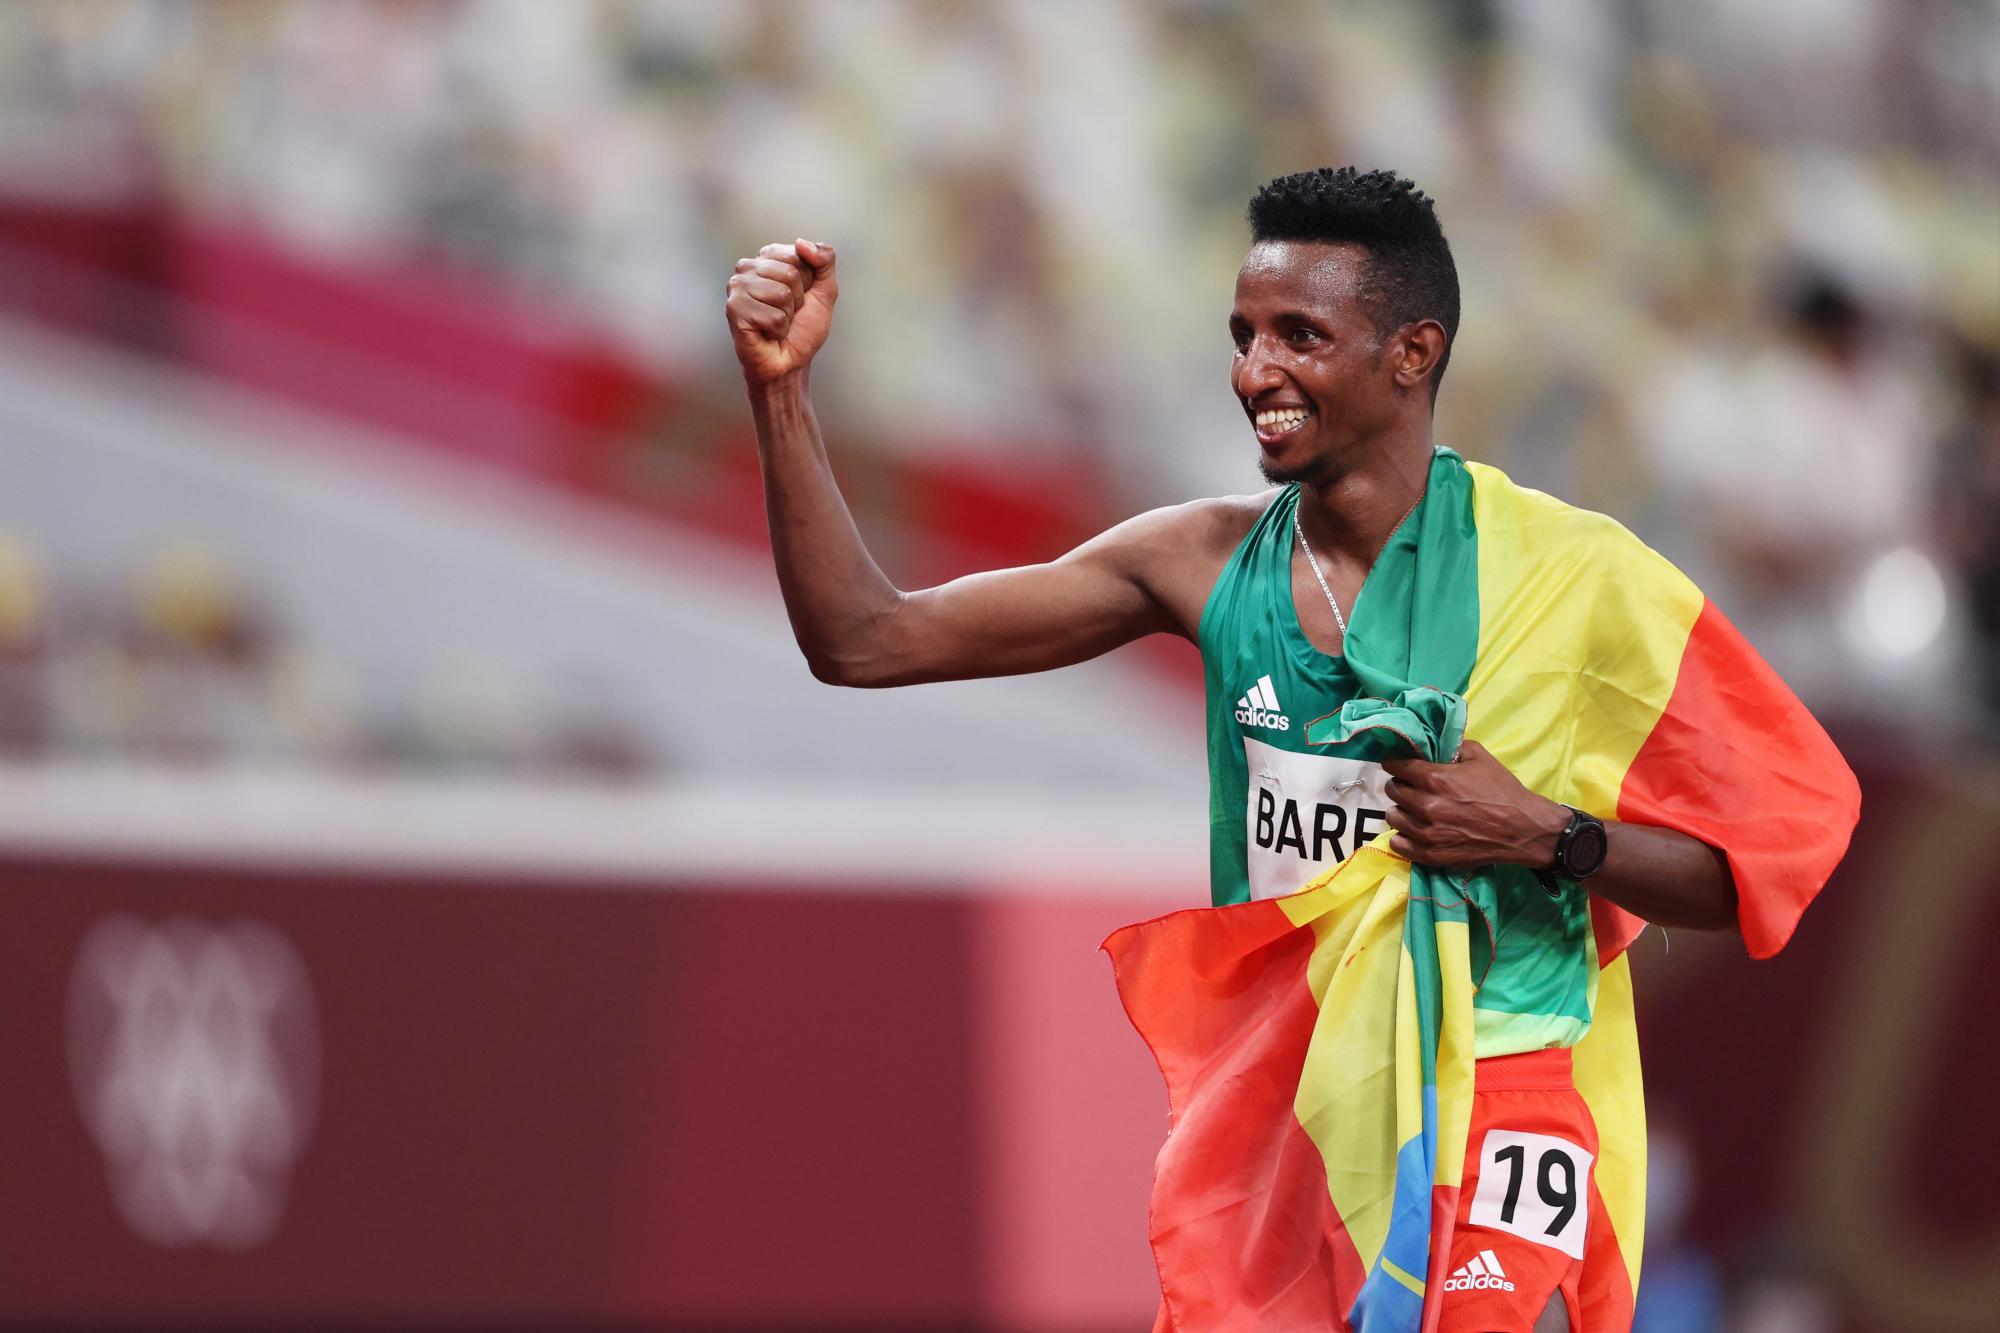 $!El etíope Barega sorprende a Cheptegei para colgarse el oro olímpico en los 10 mil metros